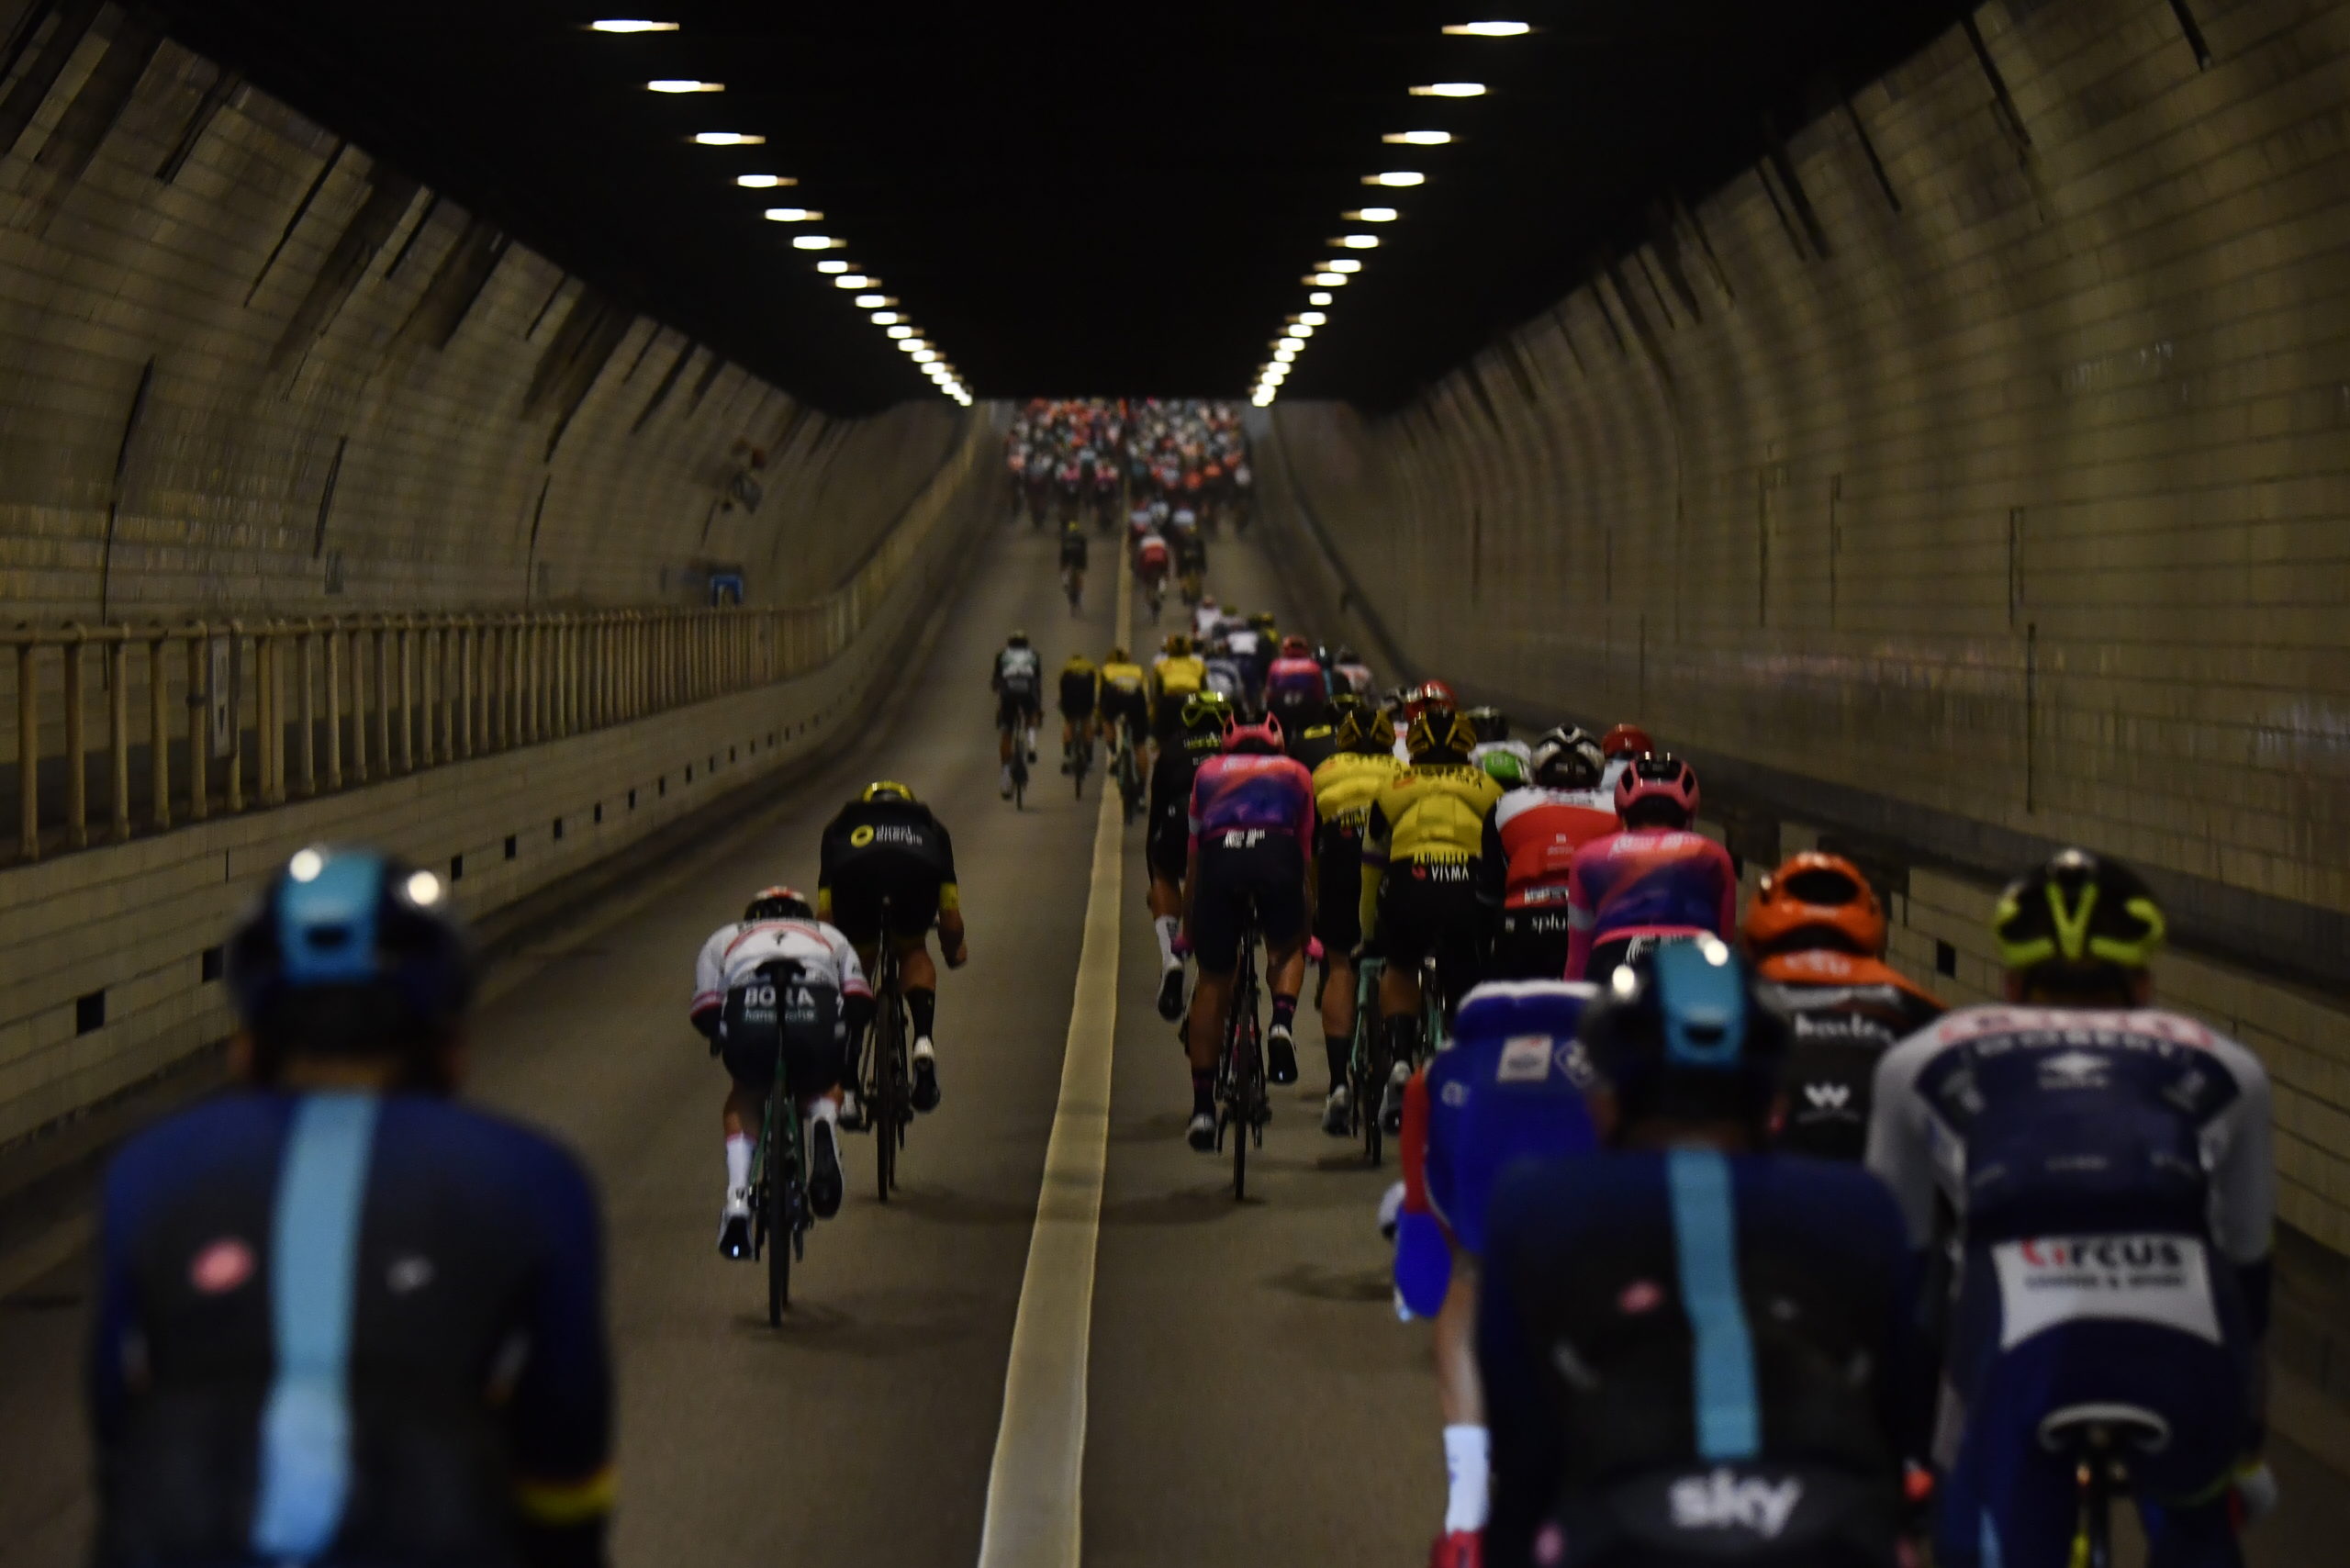 Le tunnel du "terrier de lapin" d'Anvers bénéficie d'une remise à niveau technique